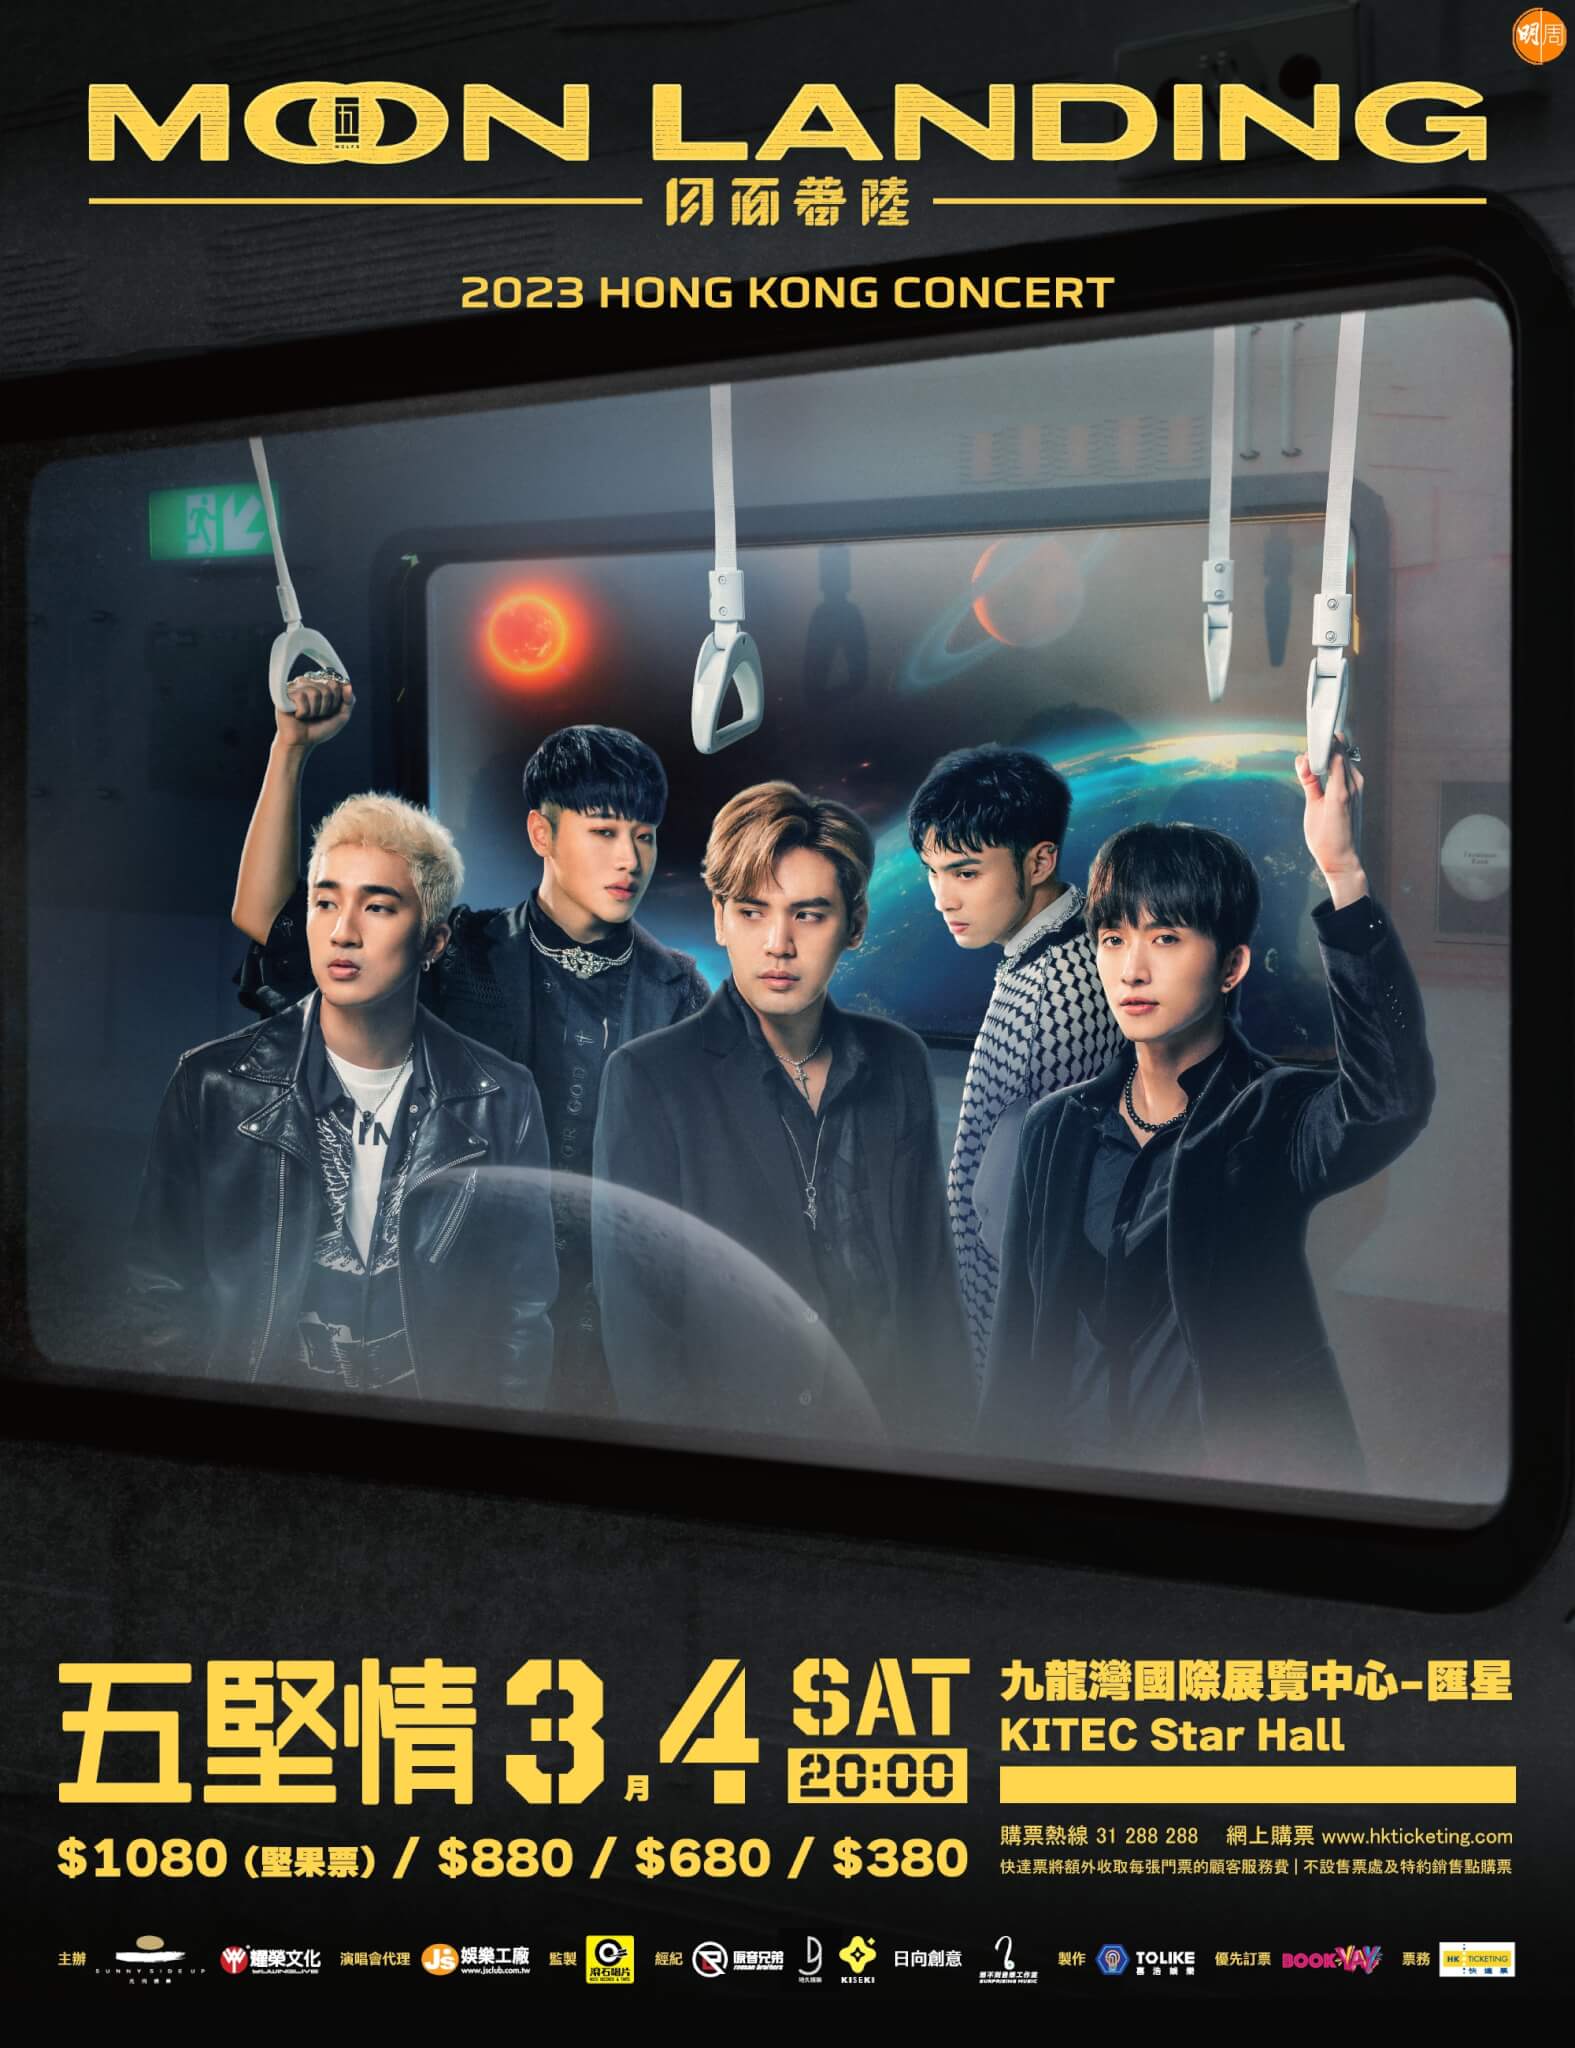 221212_moonlanding-hk-2023-poster